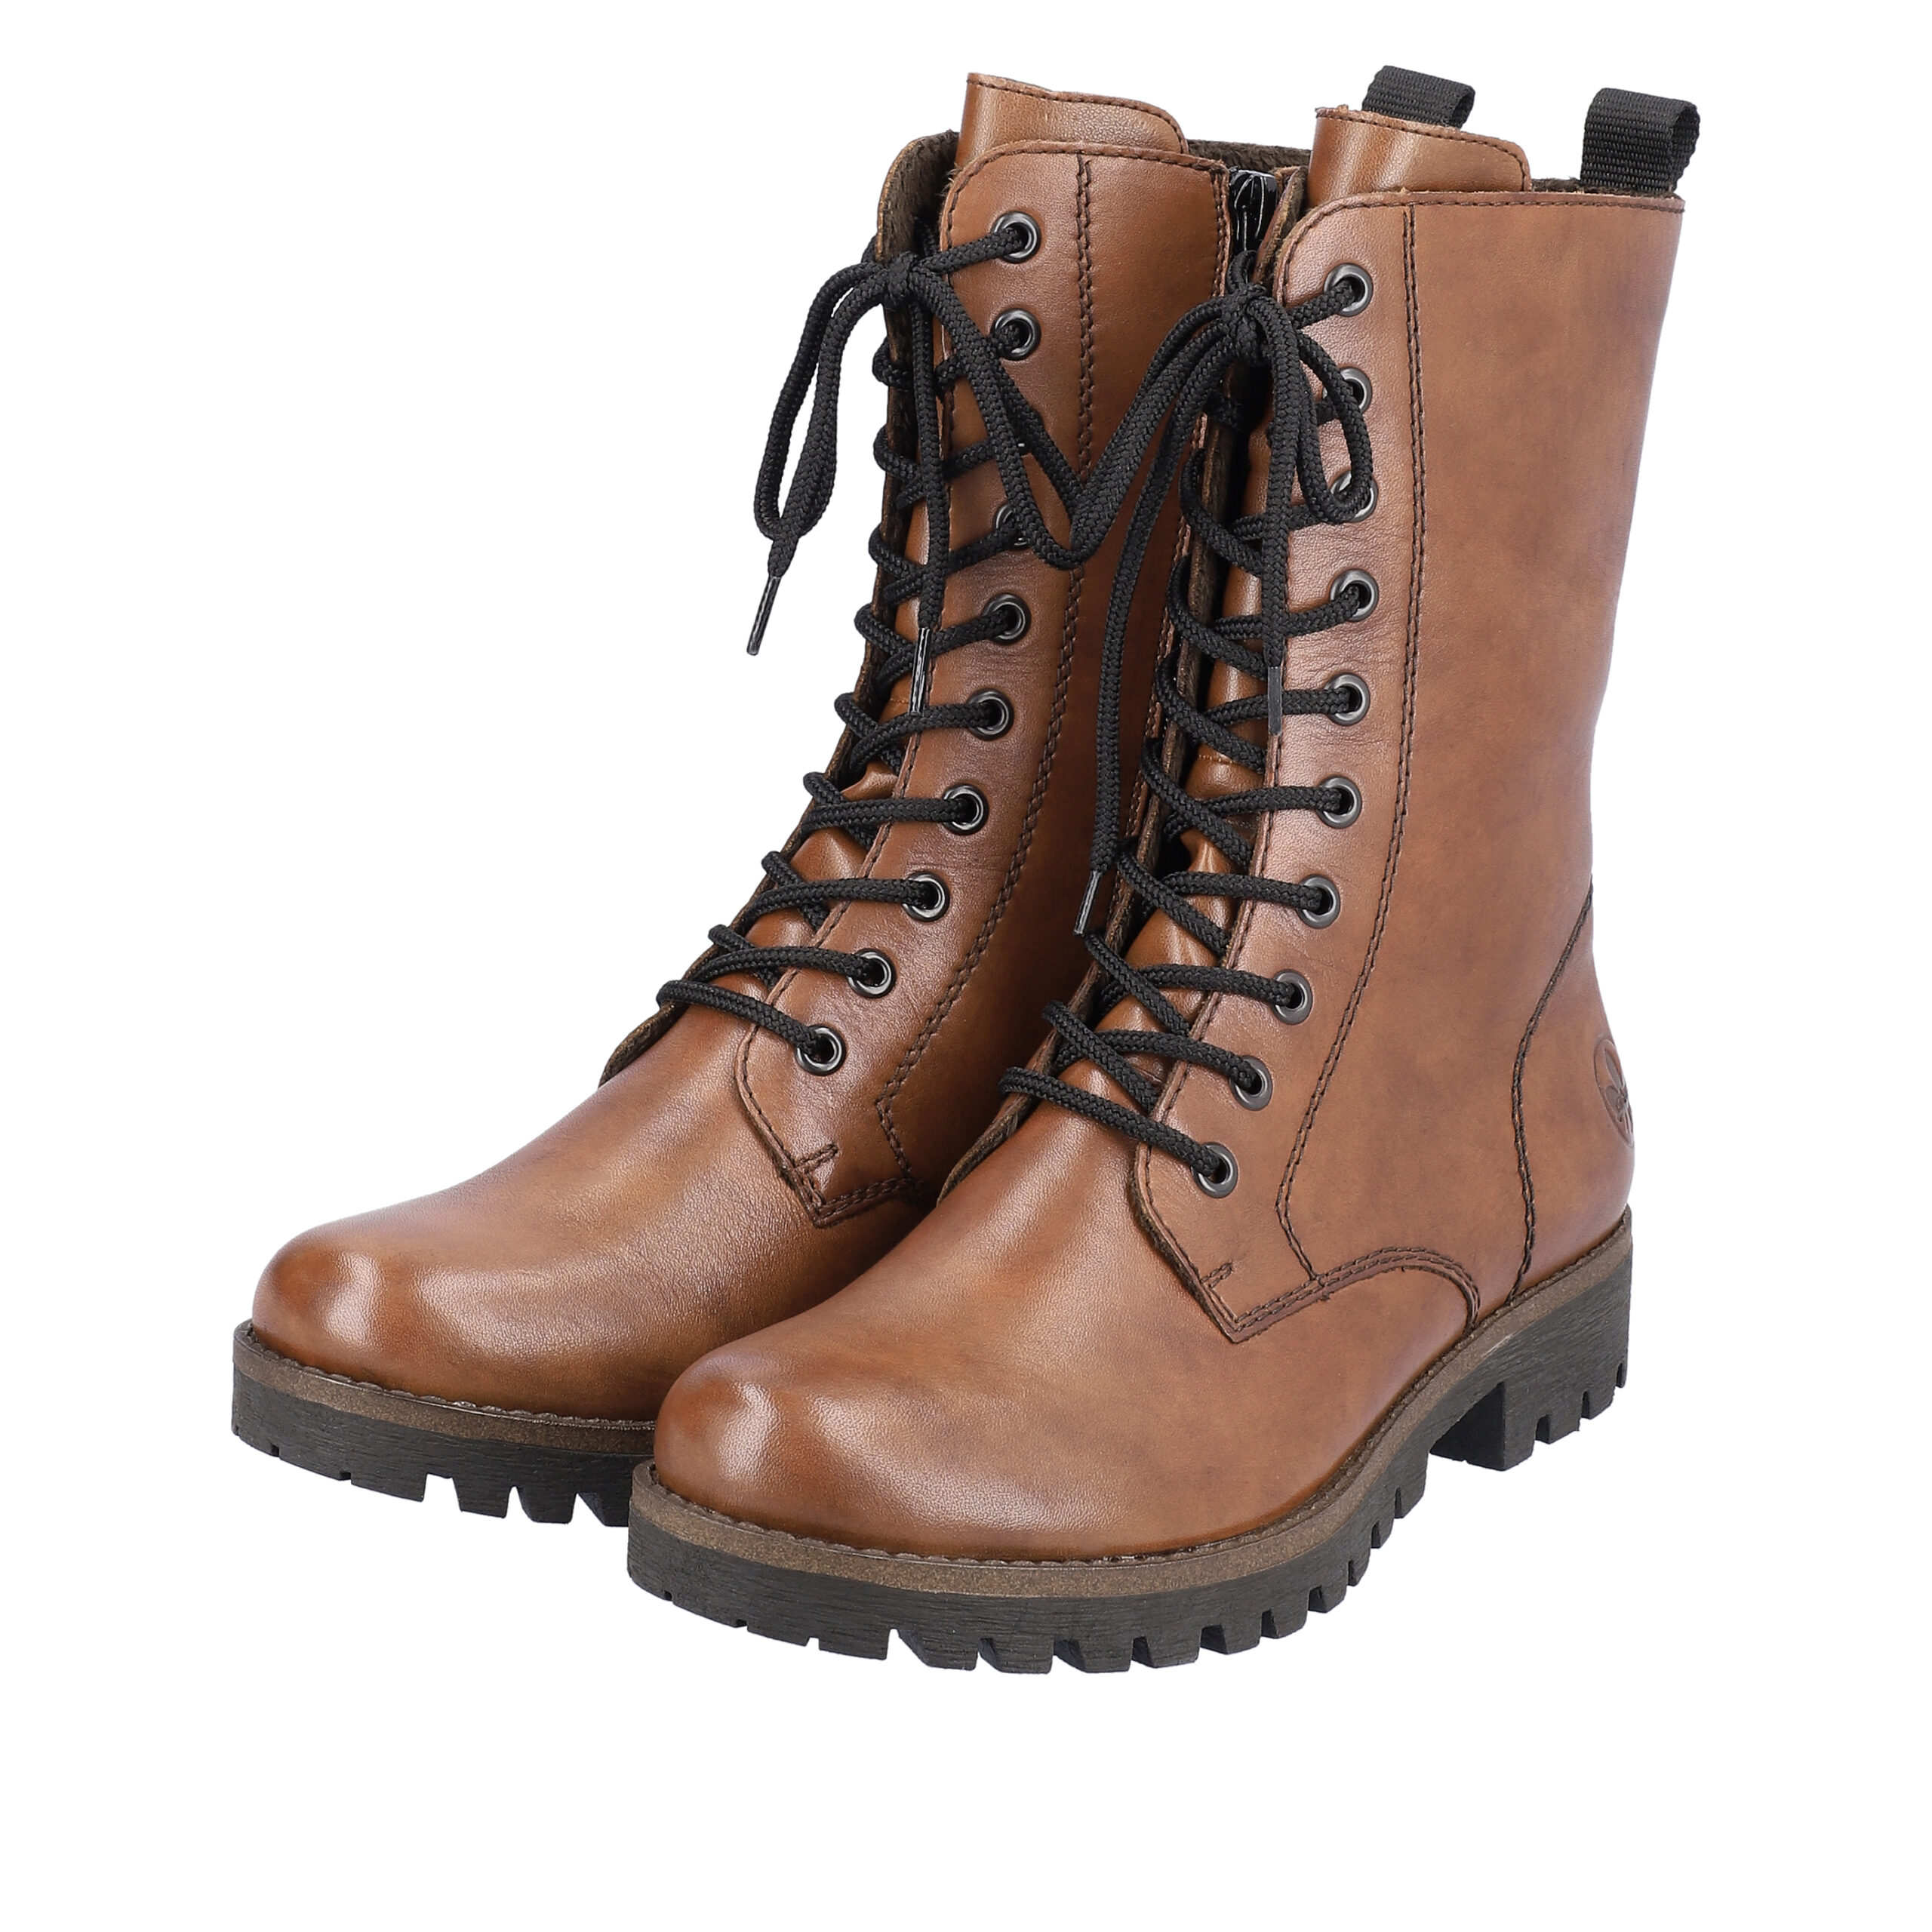 Rieker damestøvle flot brun farve Skind kvalitet |®Rieker-shop.dk